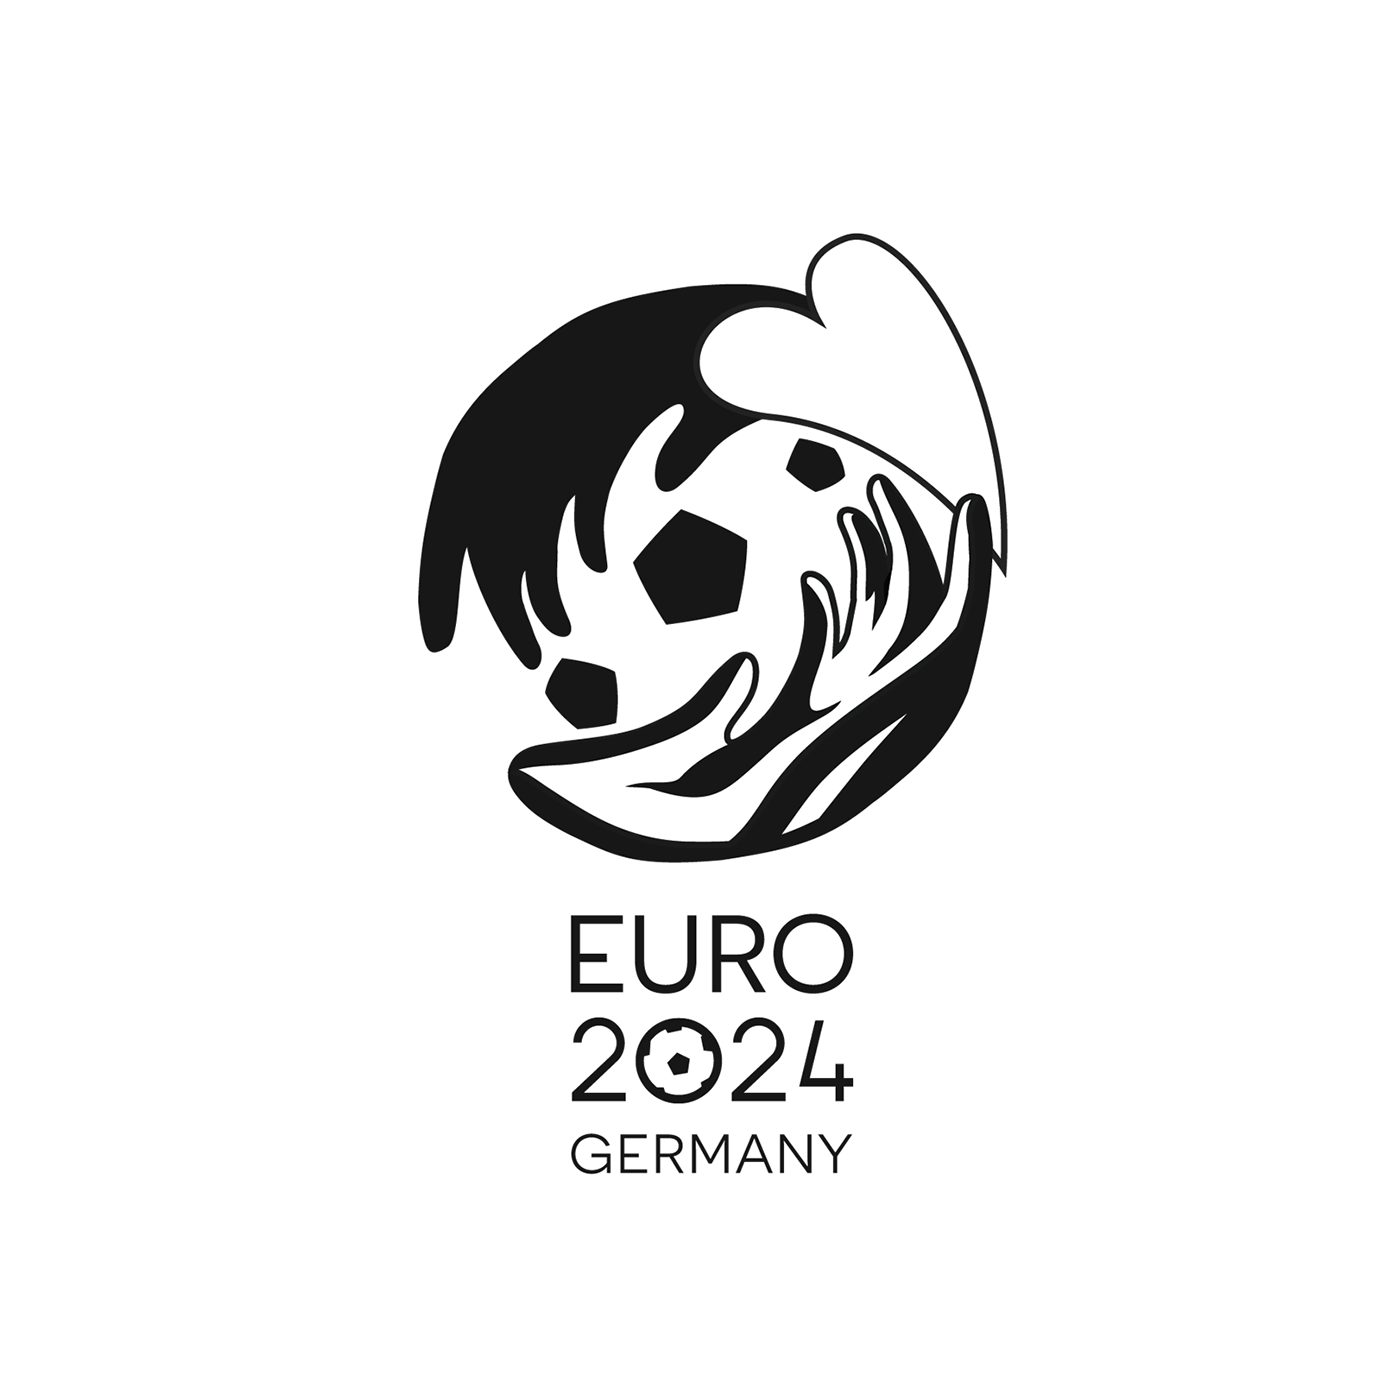 Euro 2024 Germany. Логотип 2024. Euro 2024 logo. Евровуд логотип. Логотип 2024 на прозрачном фоне